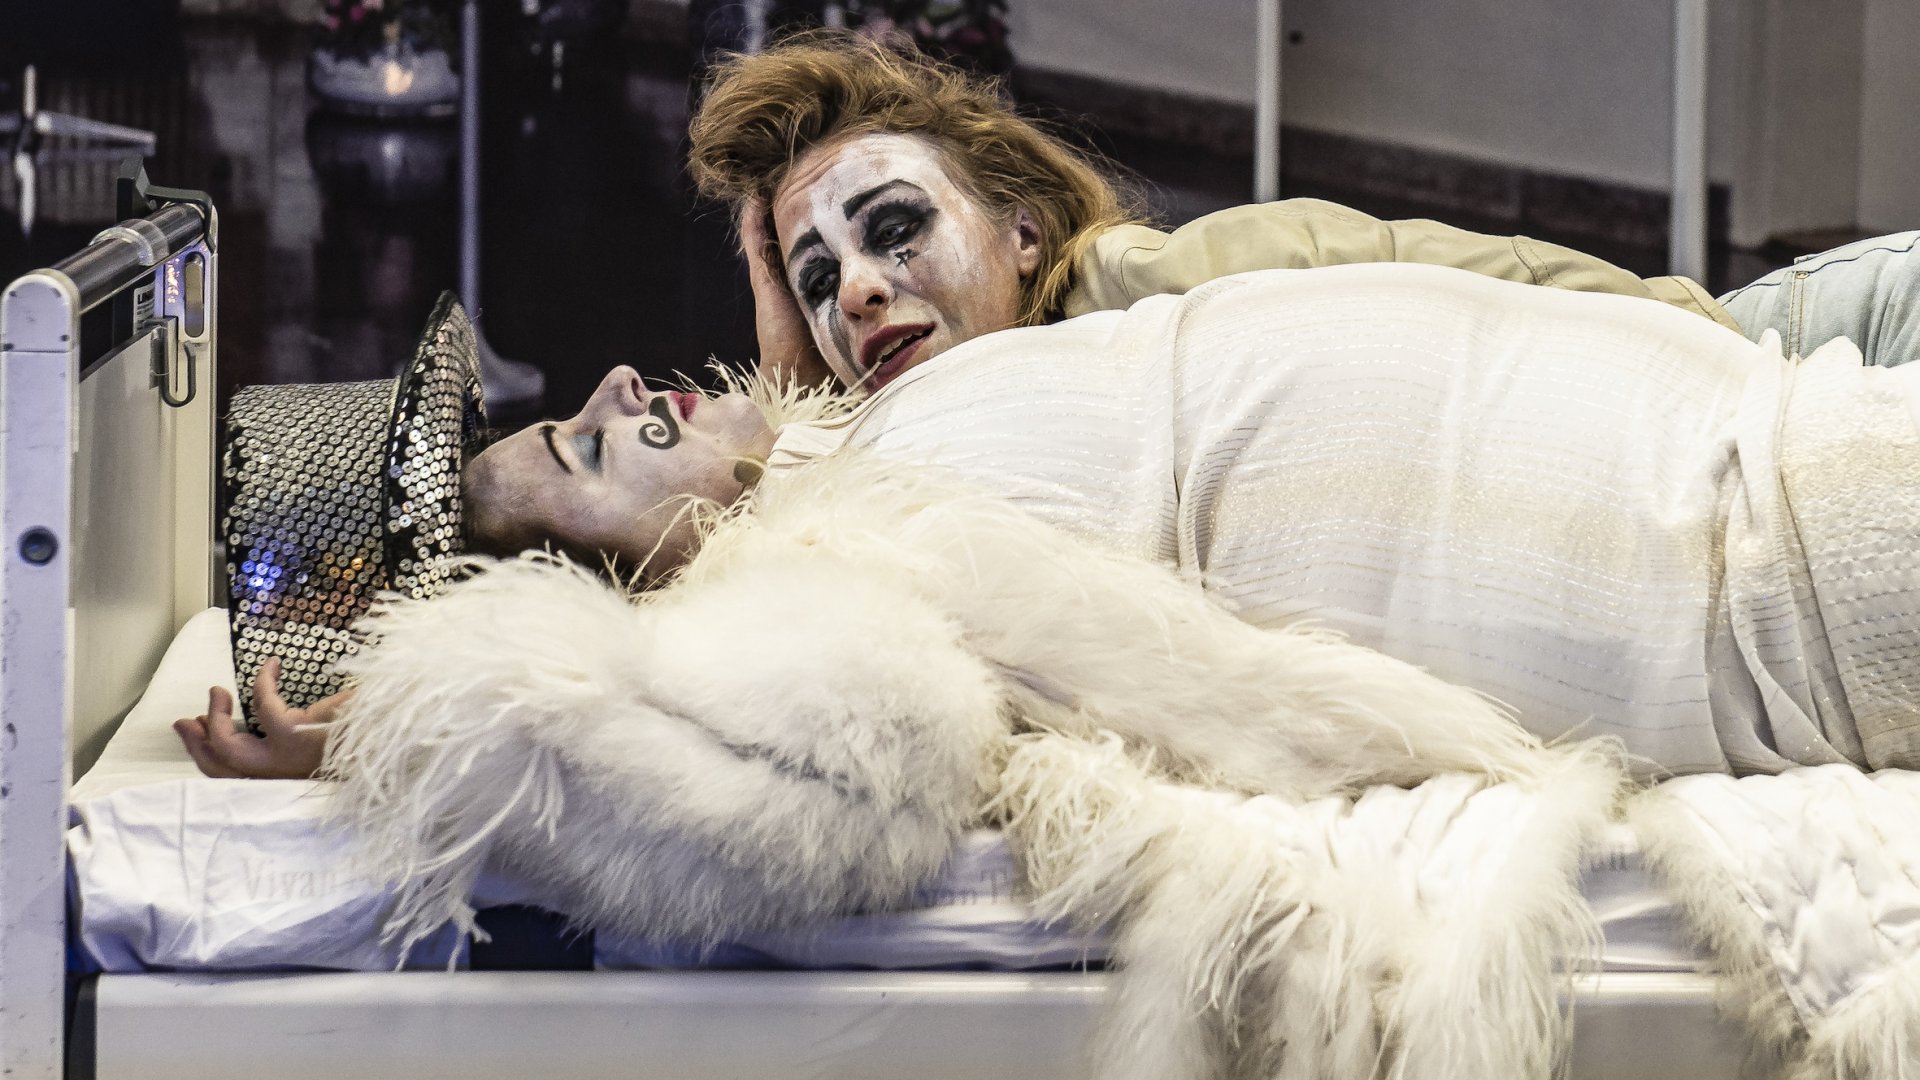 Das Photo zeigt zwei Darstellerinnen von "Brofaromin OST" in einem Krankenbett. | © Konrad Schaller